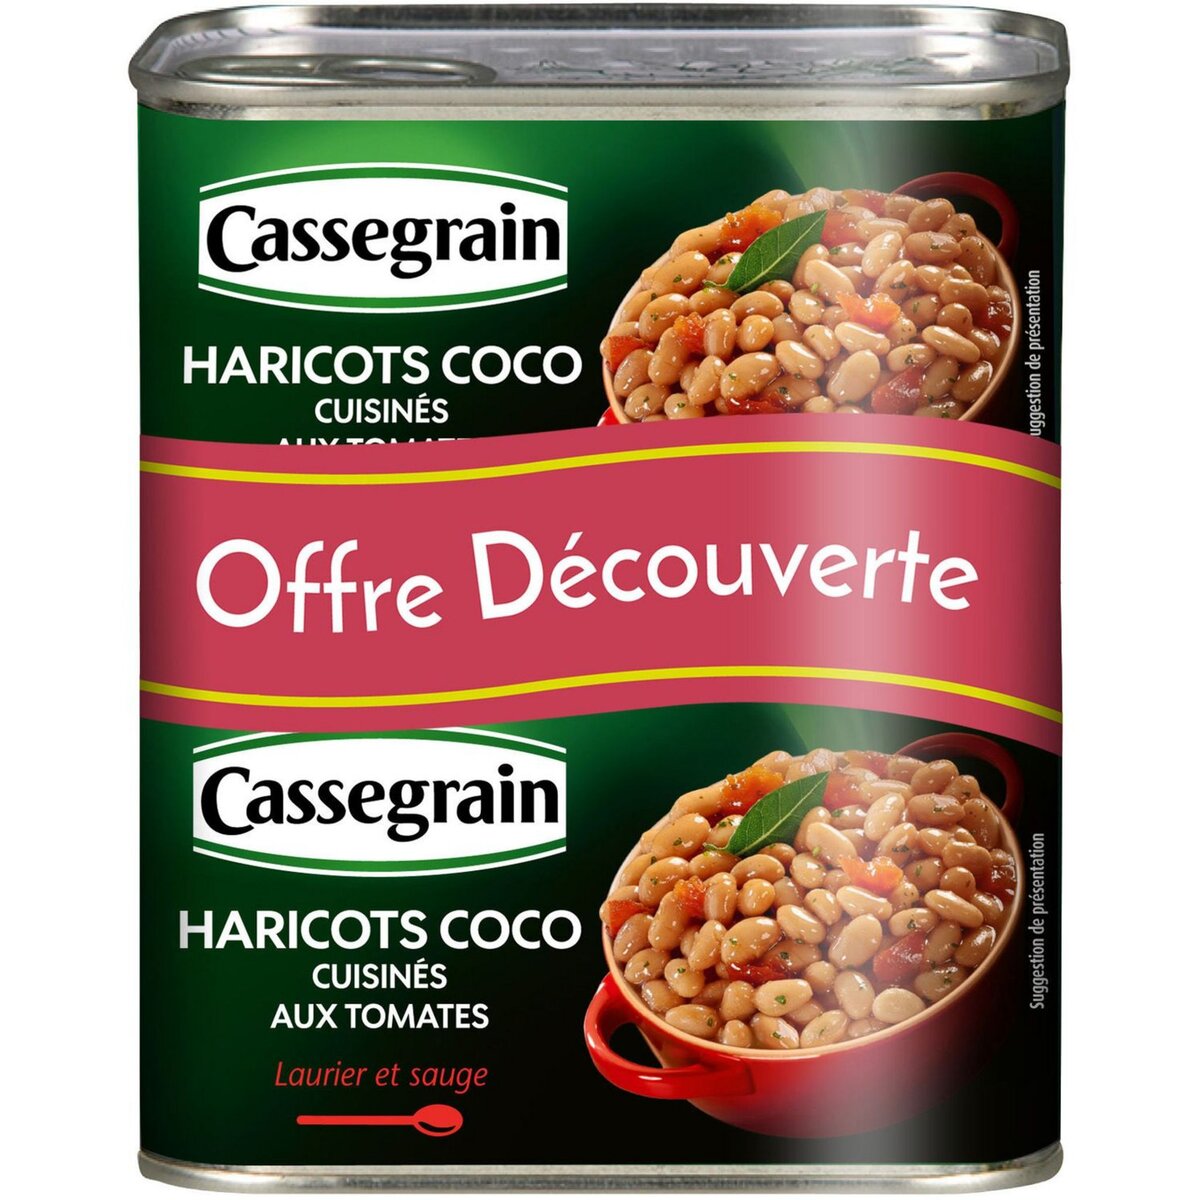 CASSEGRAIN Haricots coco cuisinés aux tomates laurier et sauge 2x435g